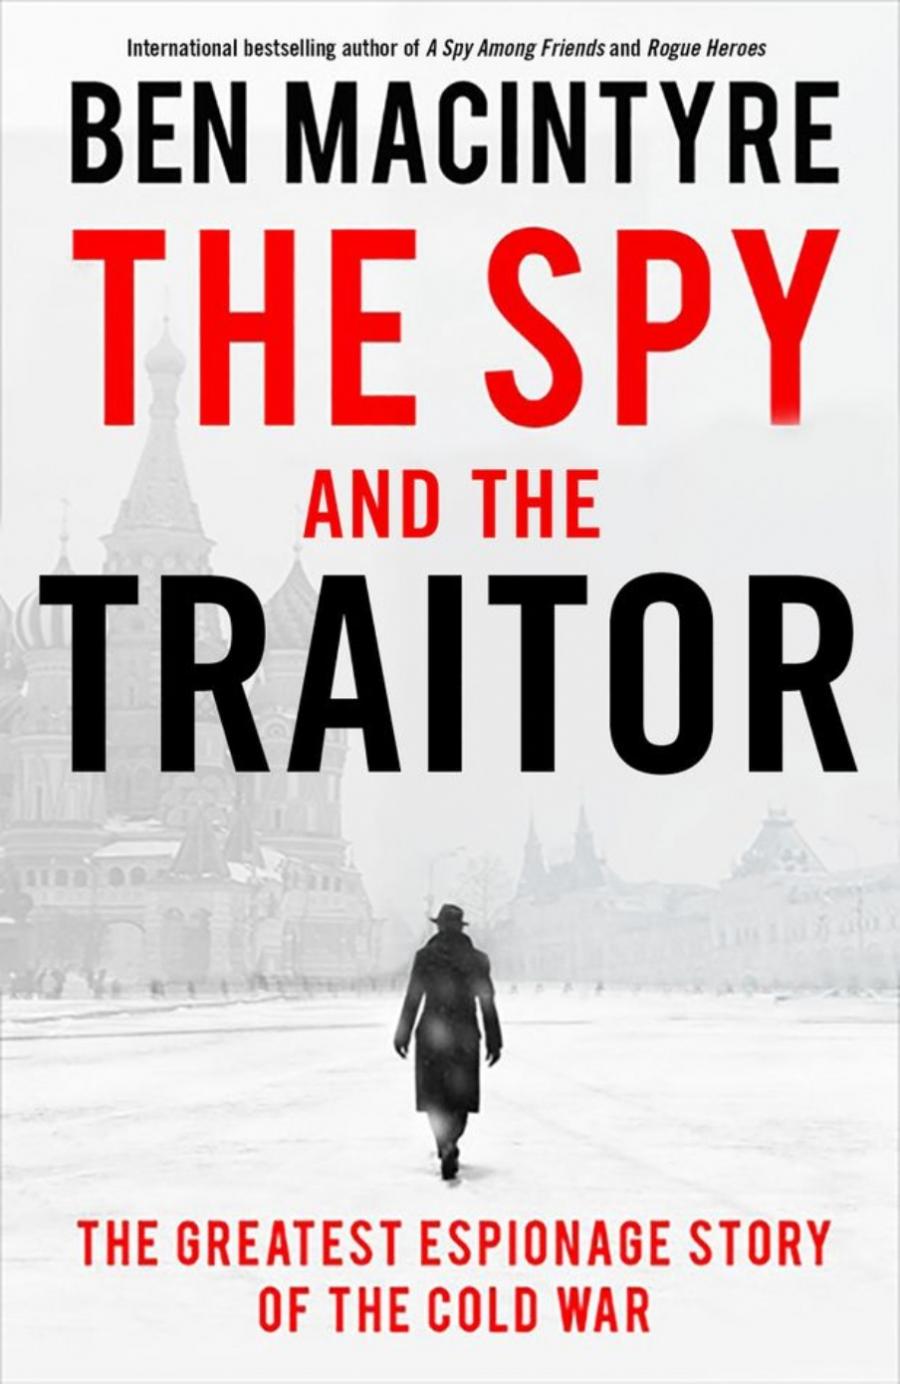 bogforside med titlen The spy and the traitor, billede af den rødeplads og en mand i trenchcoat